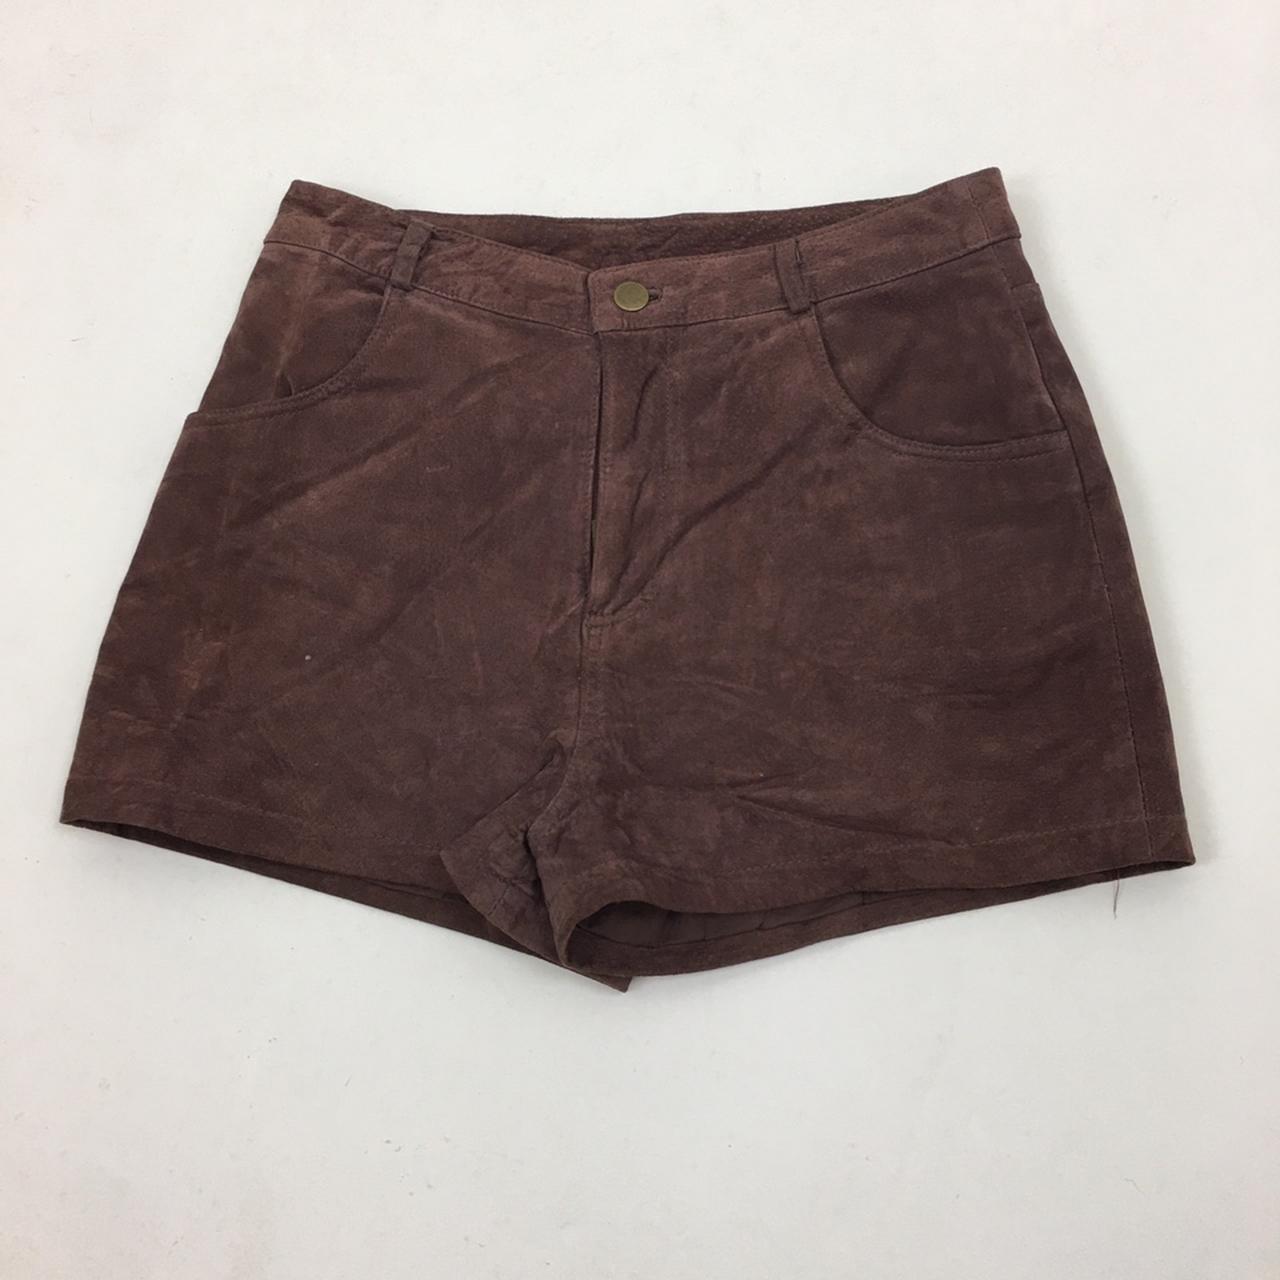 Vintage 1990s Suede Leather High waist Shorts UK... - Depop